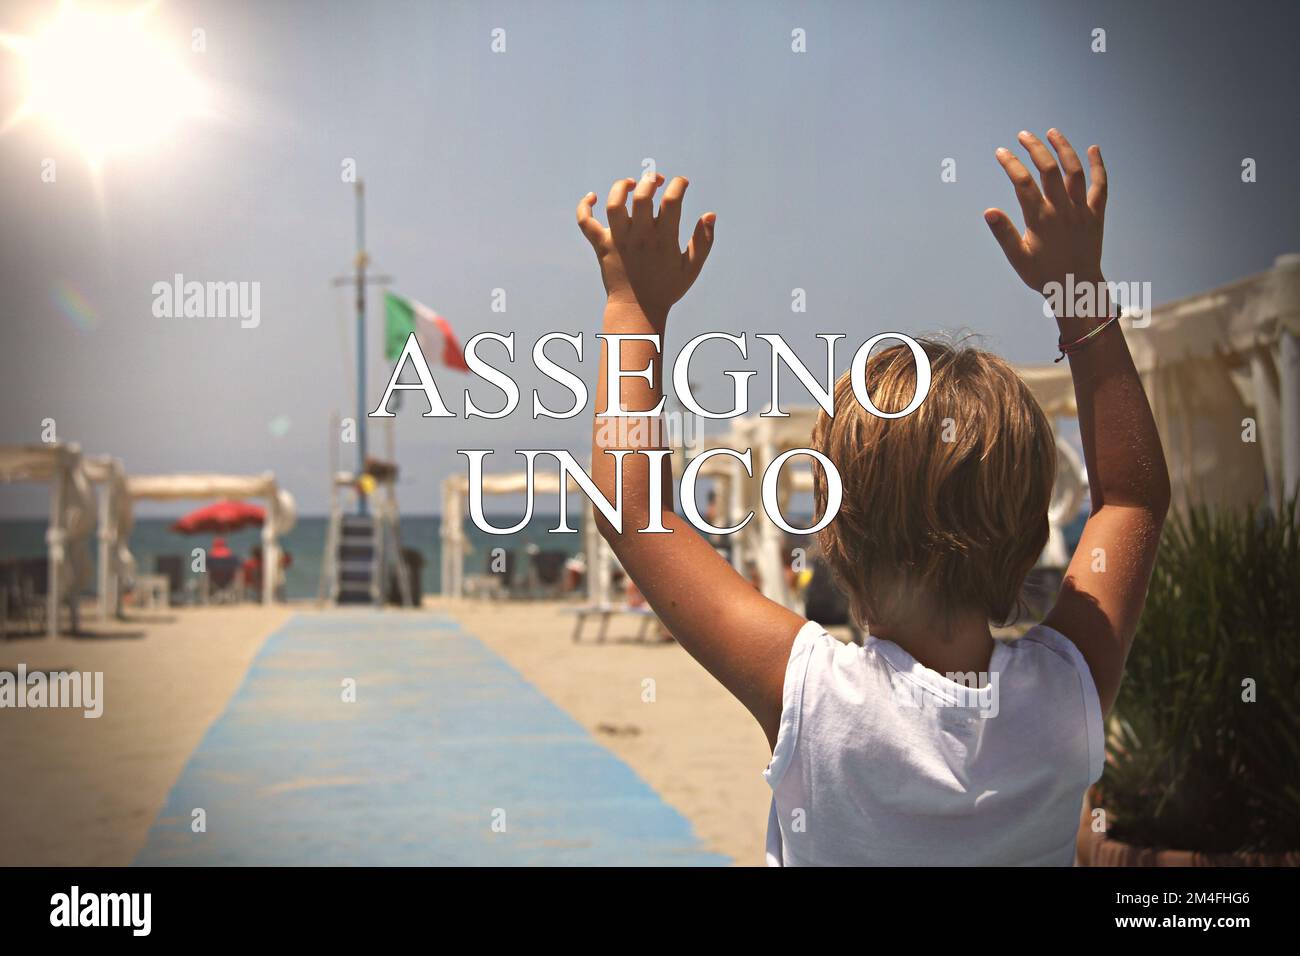 Proche d'un enfant avec le signe “assegno unico” concept de chèque de paie du gouvernement italien pour les familles avec enfants . Banque D'Images